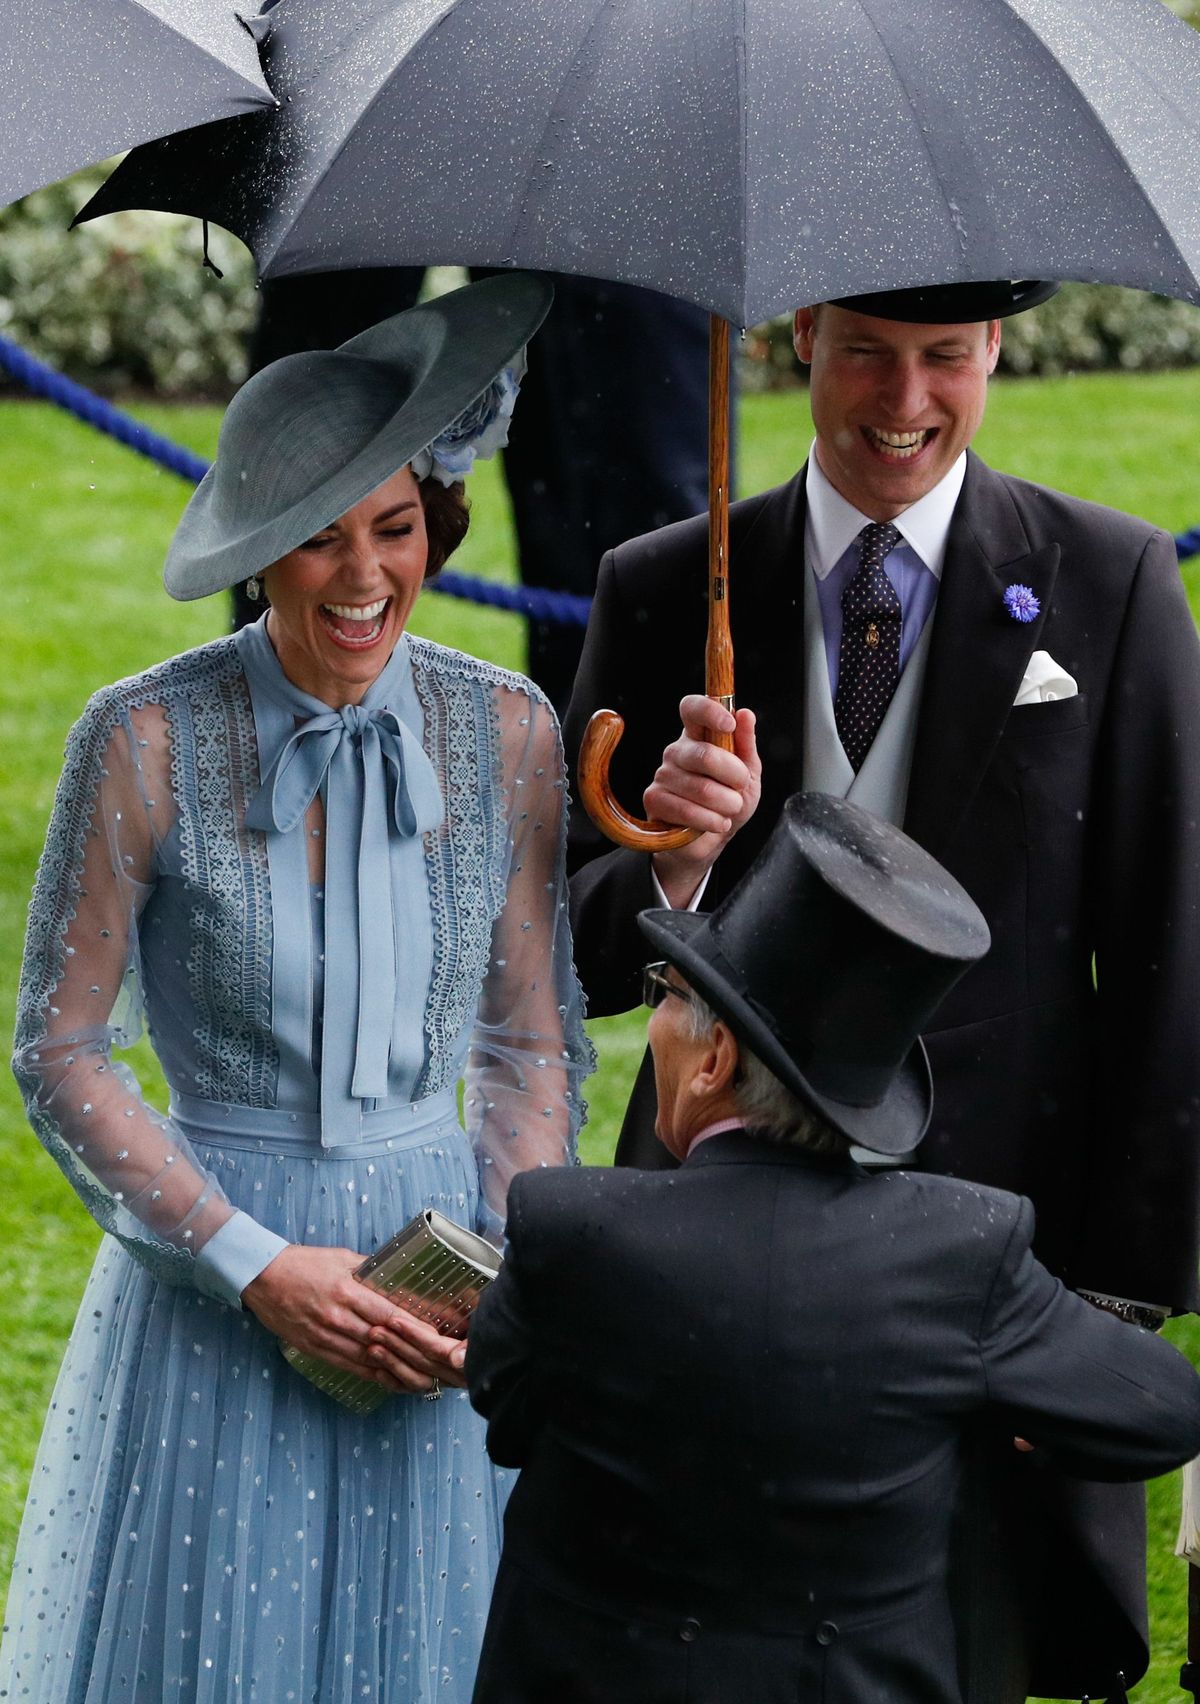 Lielbritānijas princis Viljams un Kembridžas hercogiene Ketrīna, smejoties sarunā ar atvaļināto žokeju karaliskajās zirgu skriešanās sacīkstēs Askotā, 2019. gada 18. jūnijā.